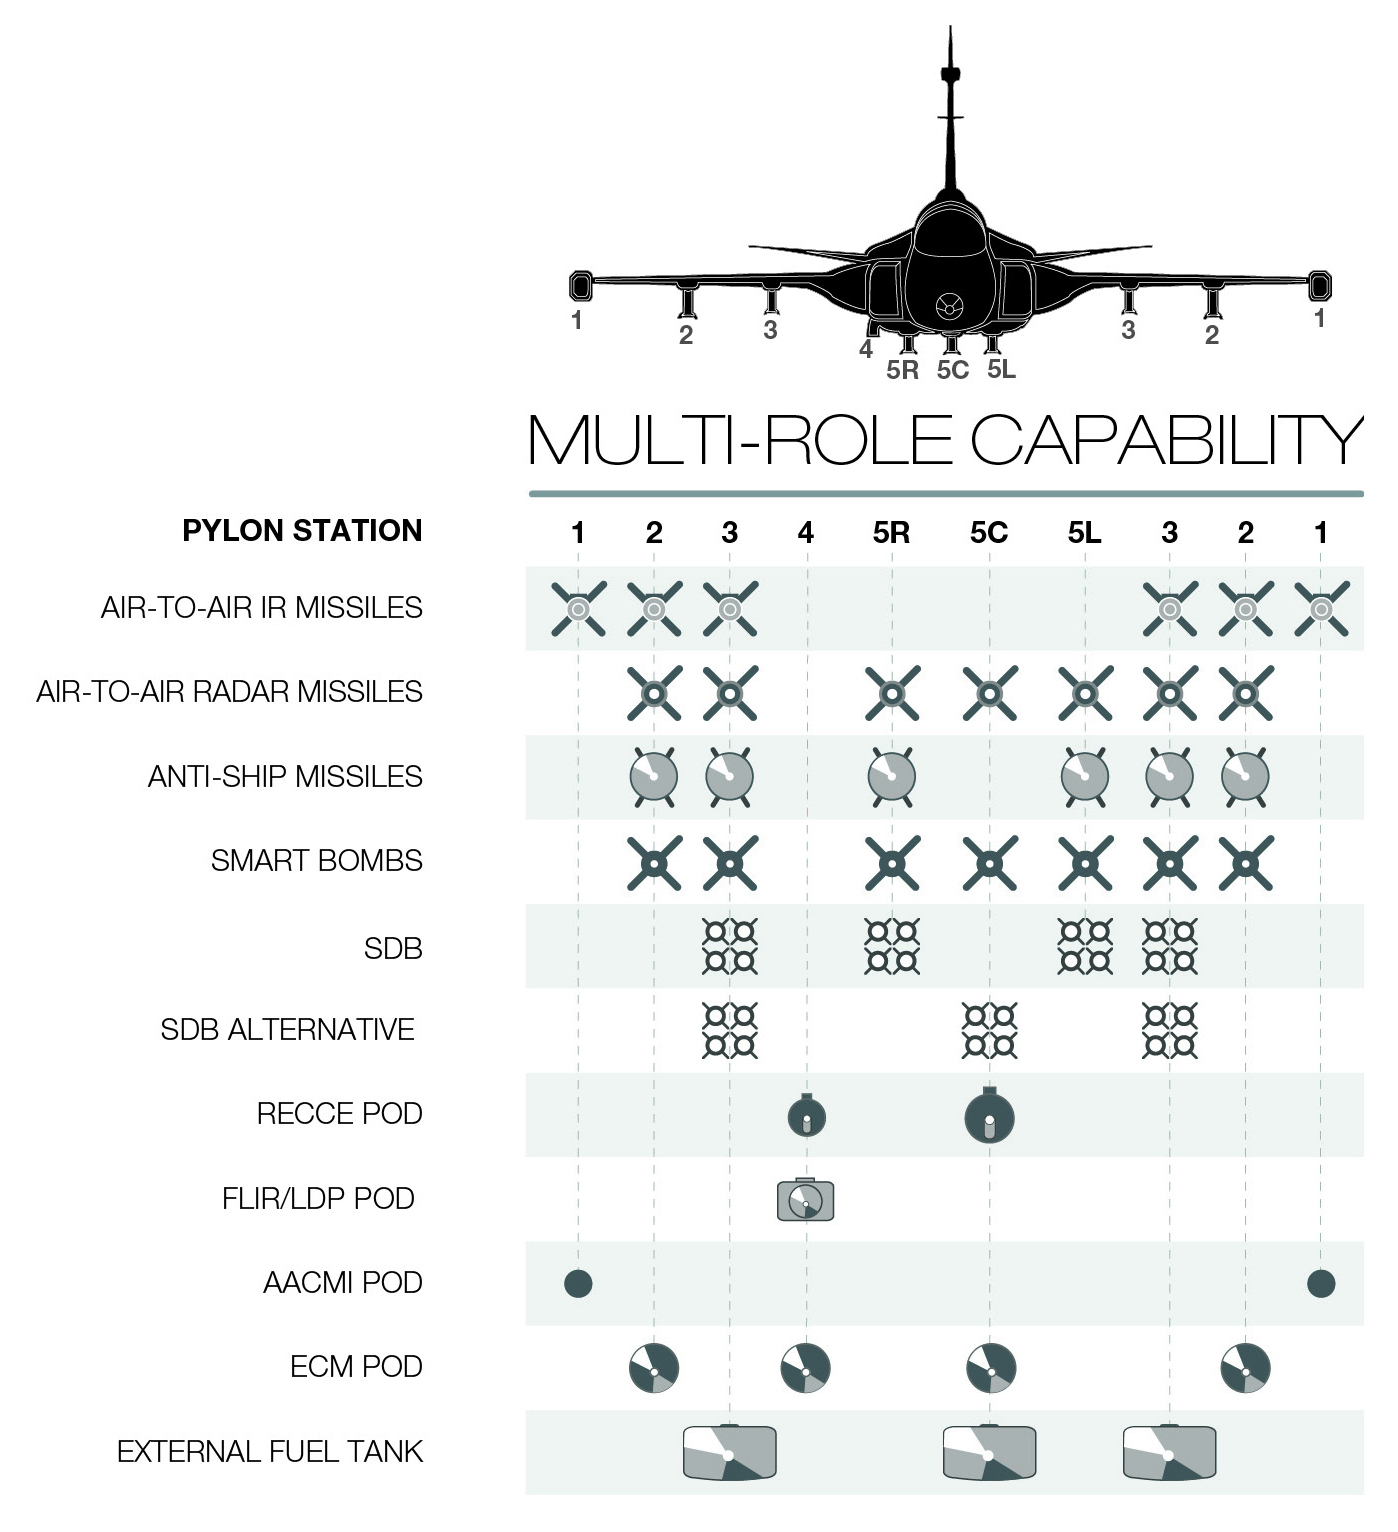 Saab Gripen E/F Multi-Role Capability